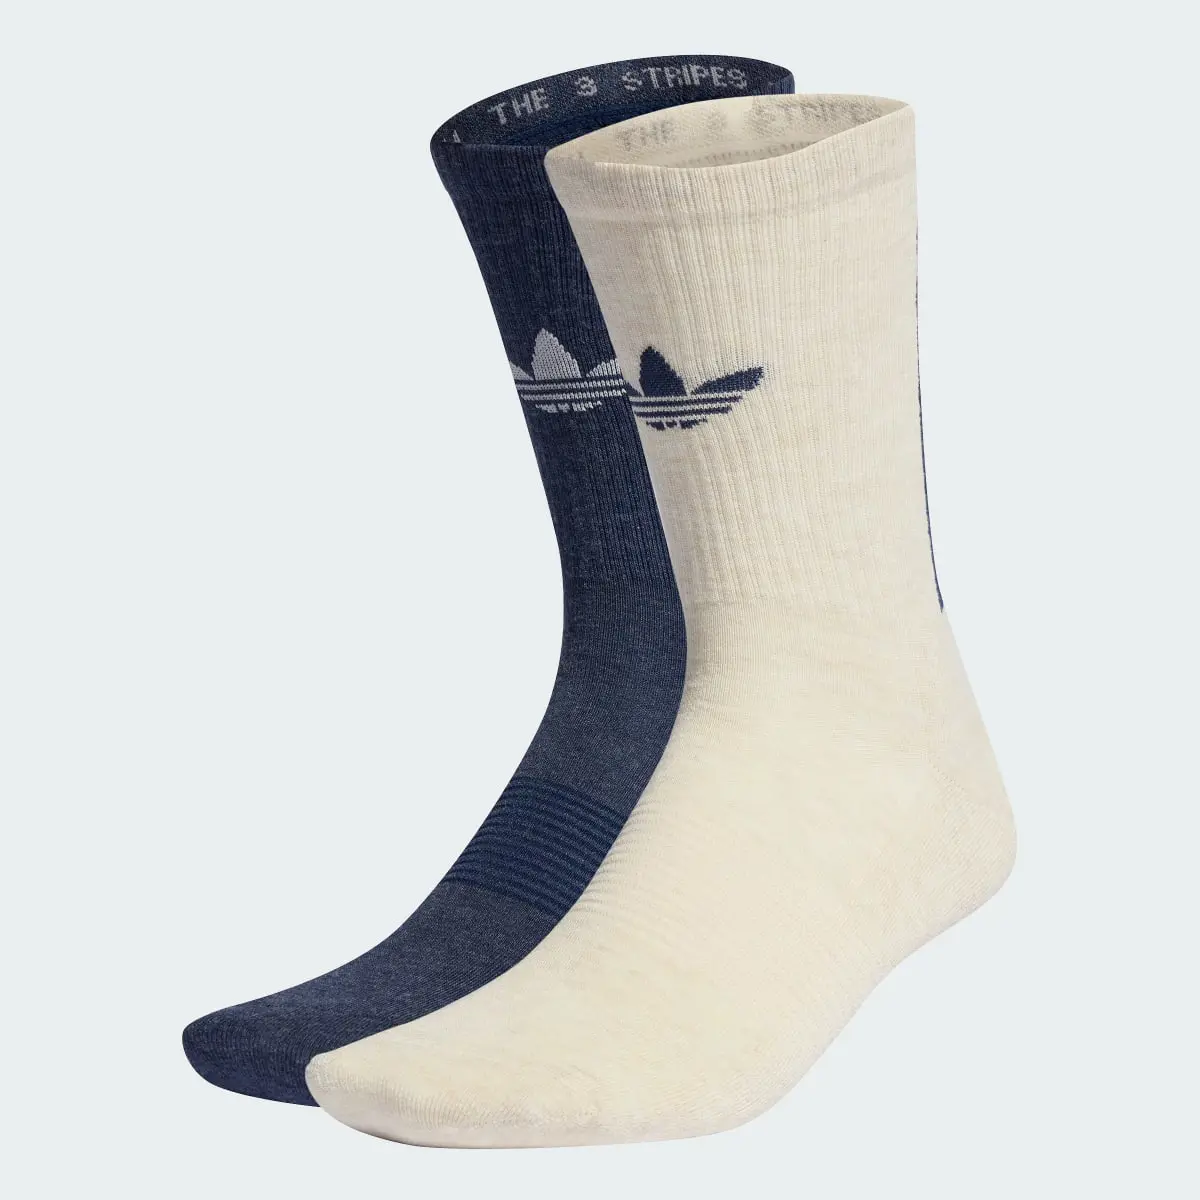 Adidas Trefoil Premium Crew Socks 2 Pairs. 1